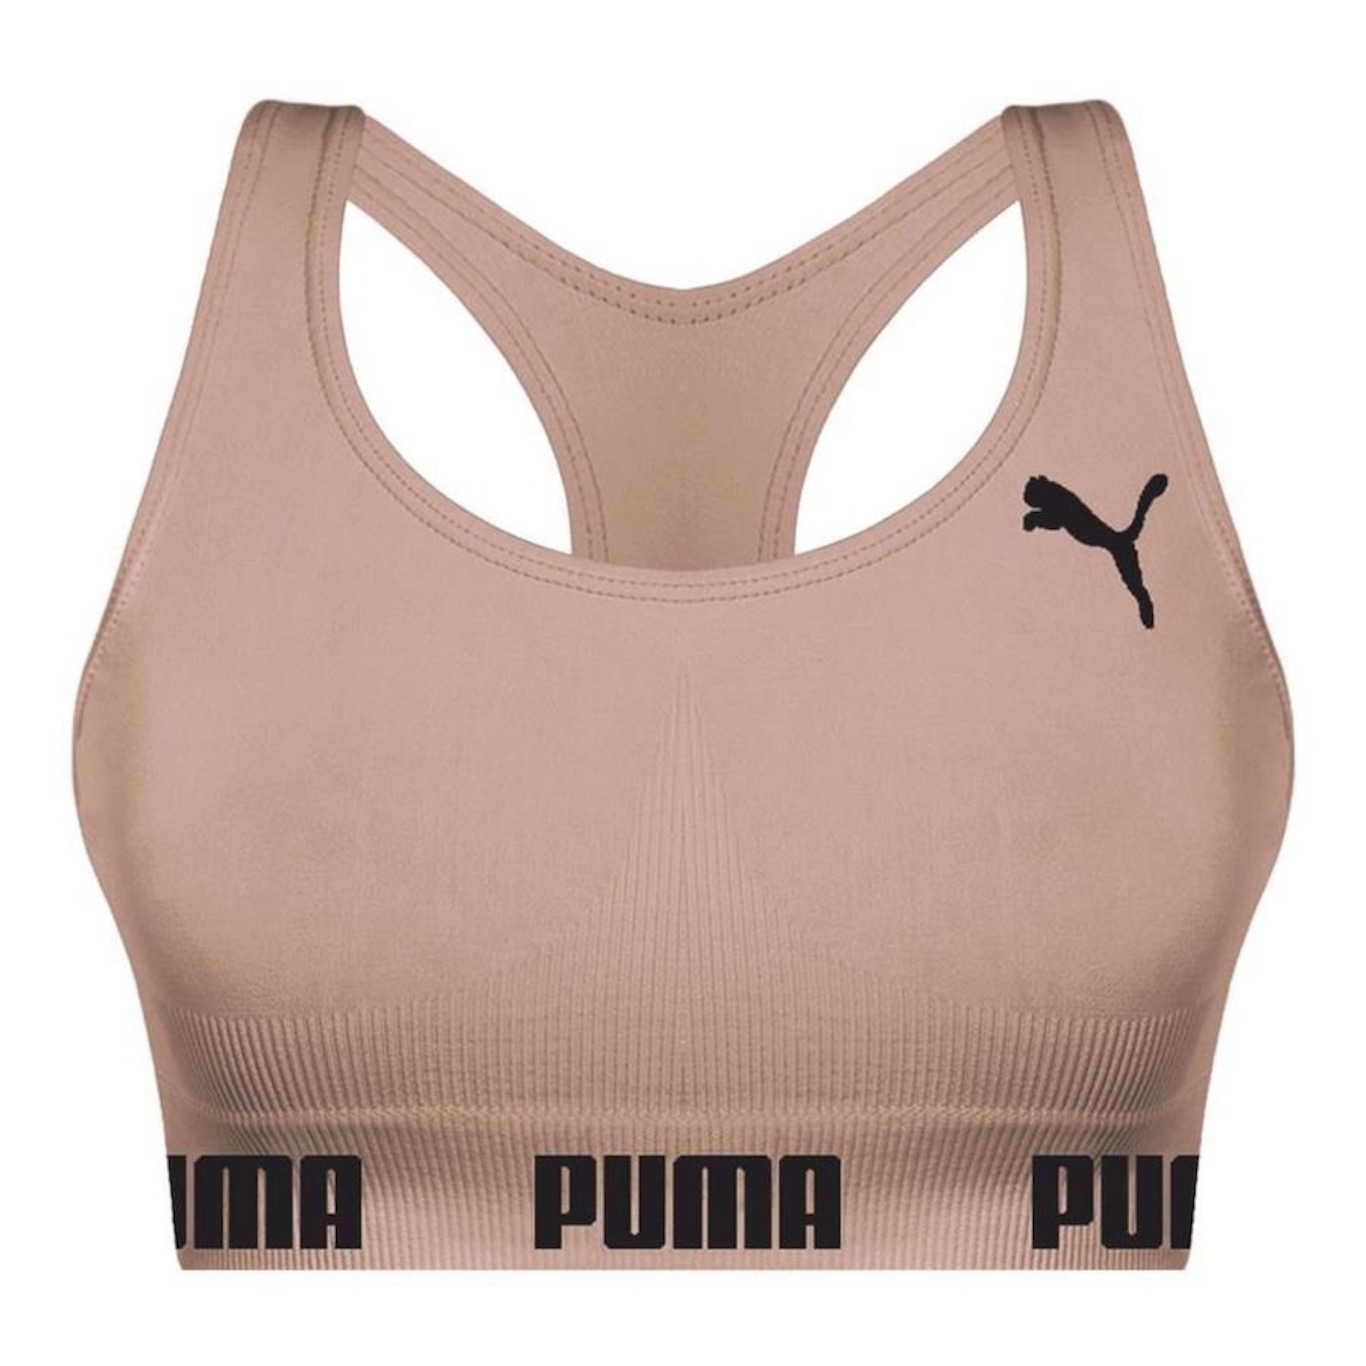 Top Fitness Puma Nadador Sem Costura - Feminino - Foto 1